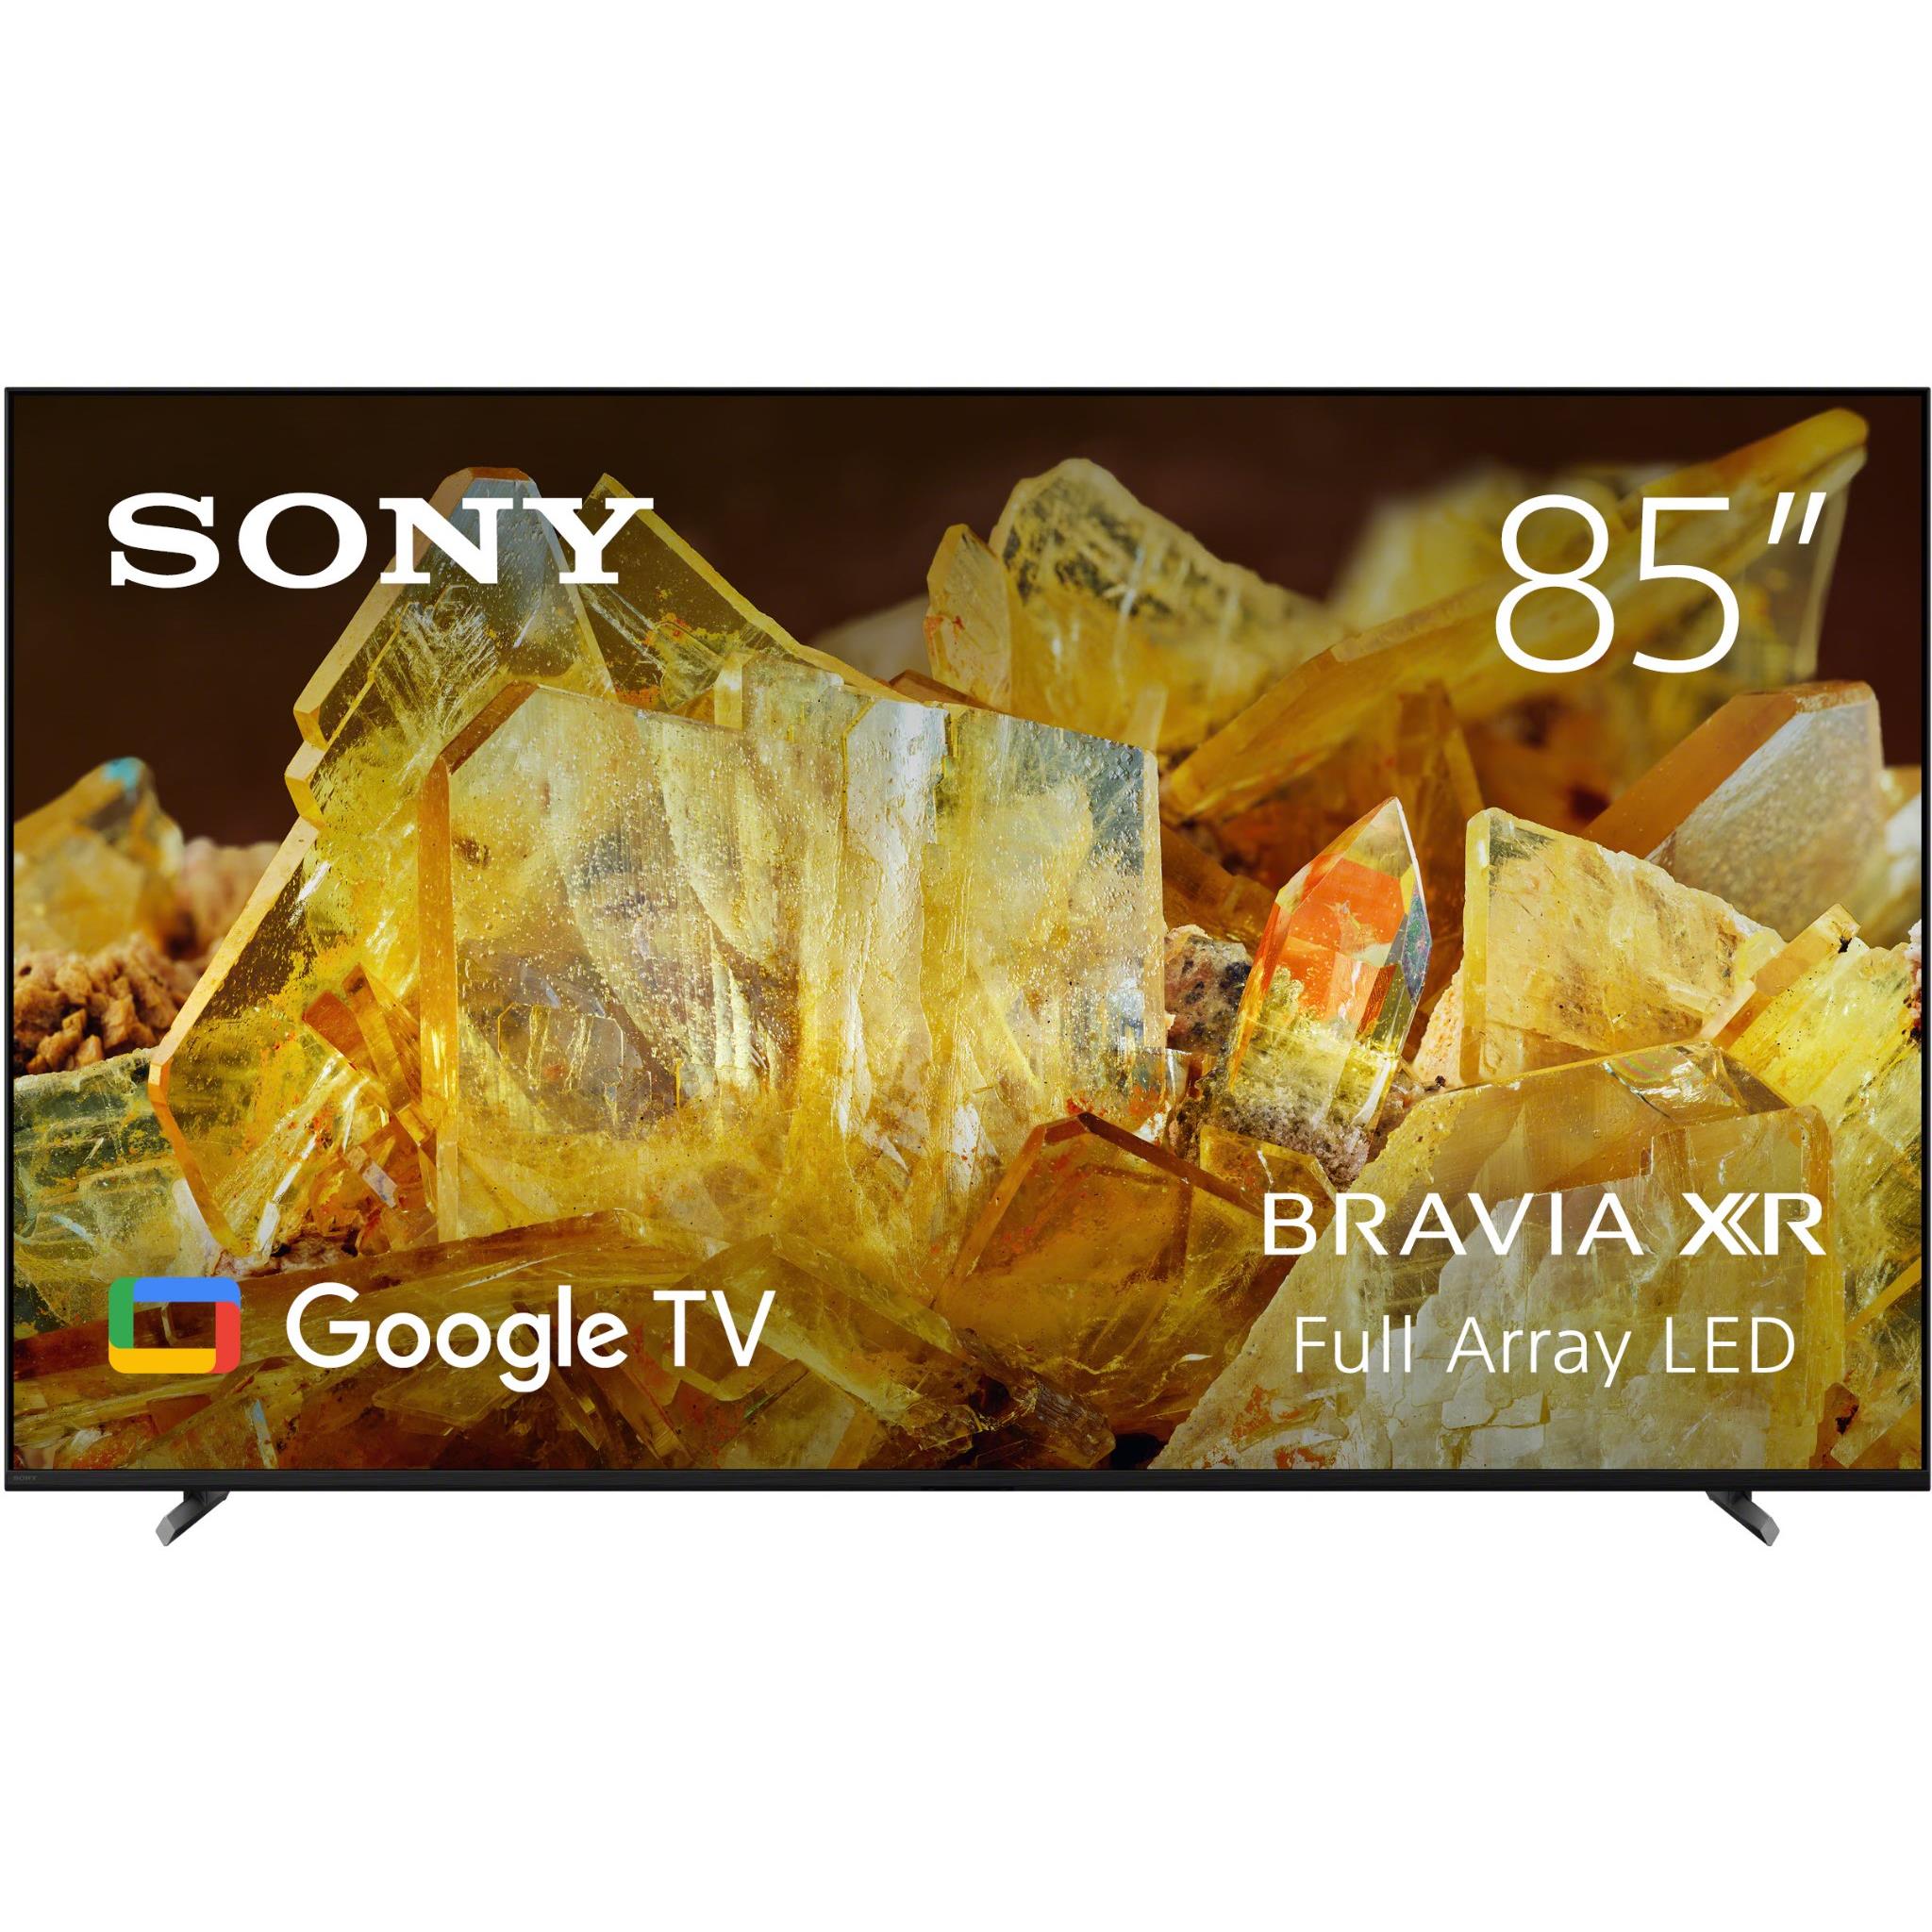 sony 85" x90l bravia xr full array led 4k google tv [2023]